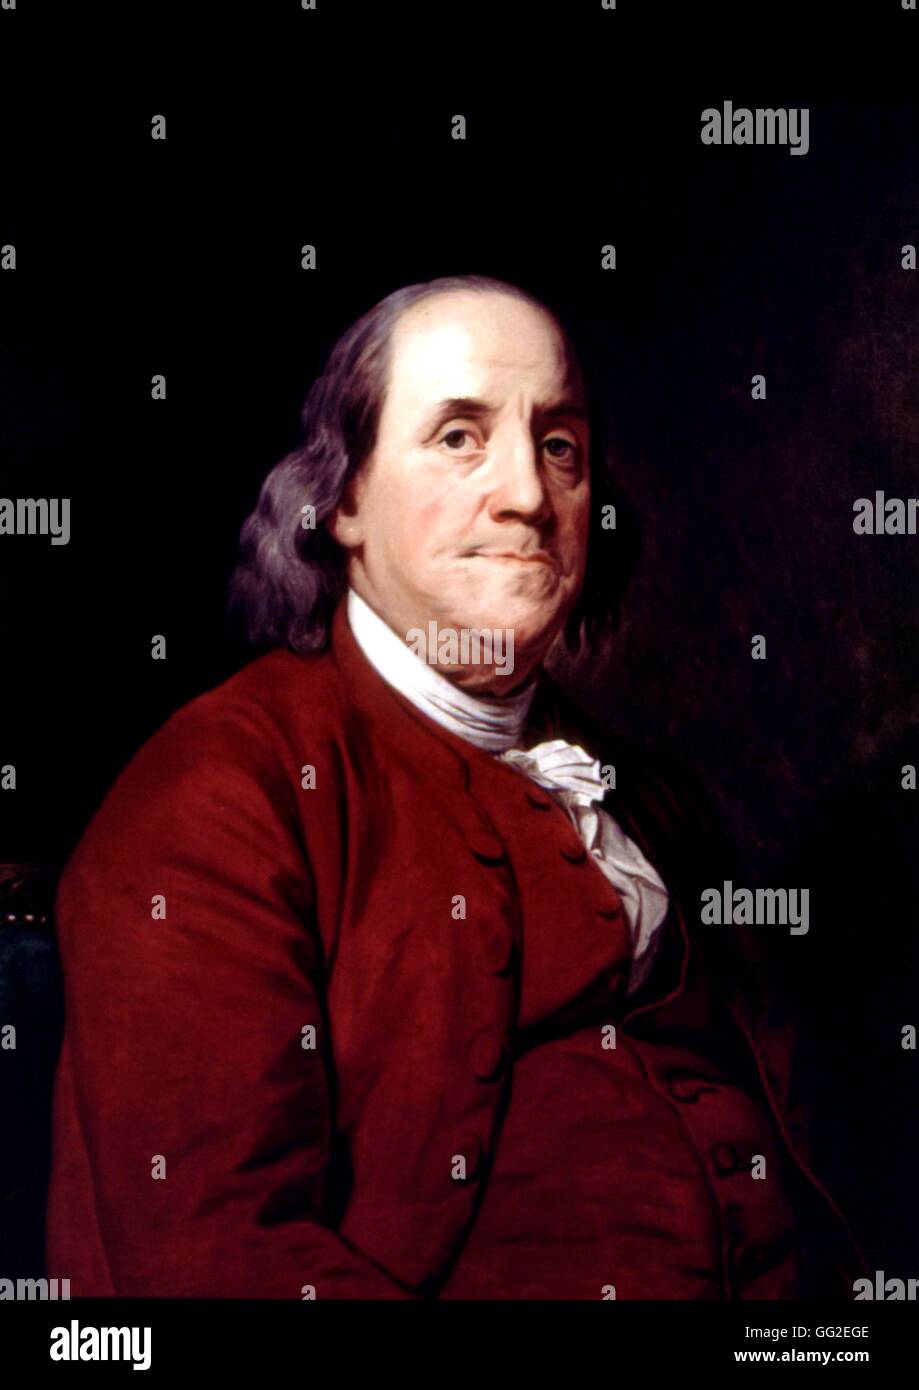 John Wright amerikanische Schule Portrait von Benjamin Franklin 1782 Öl auf Leinwand Washington, Corcoran Galerie der Kunst Stockfoto